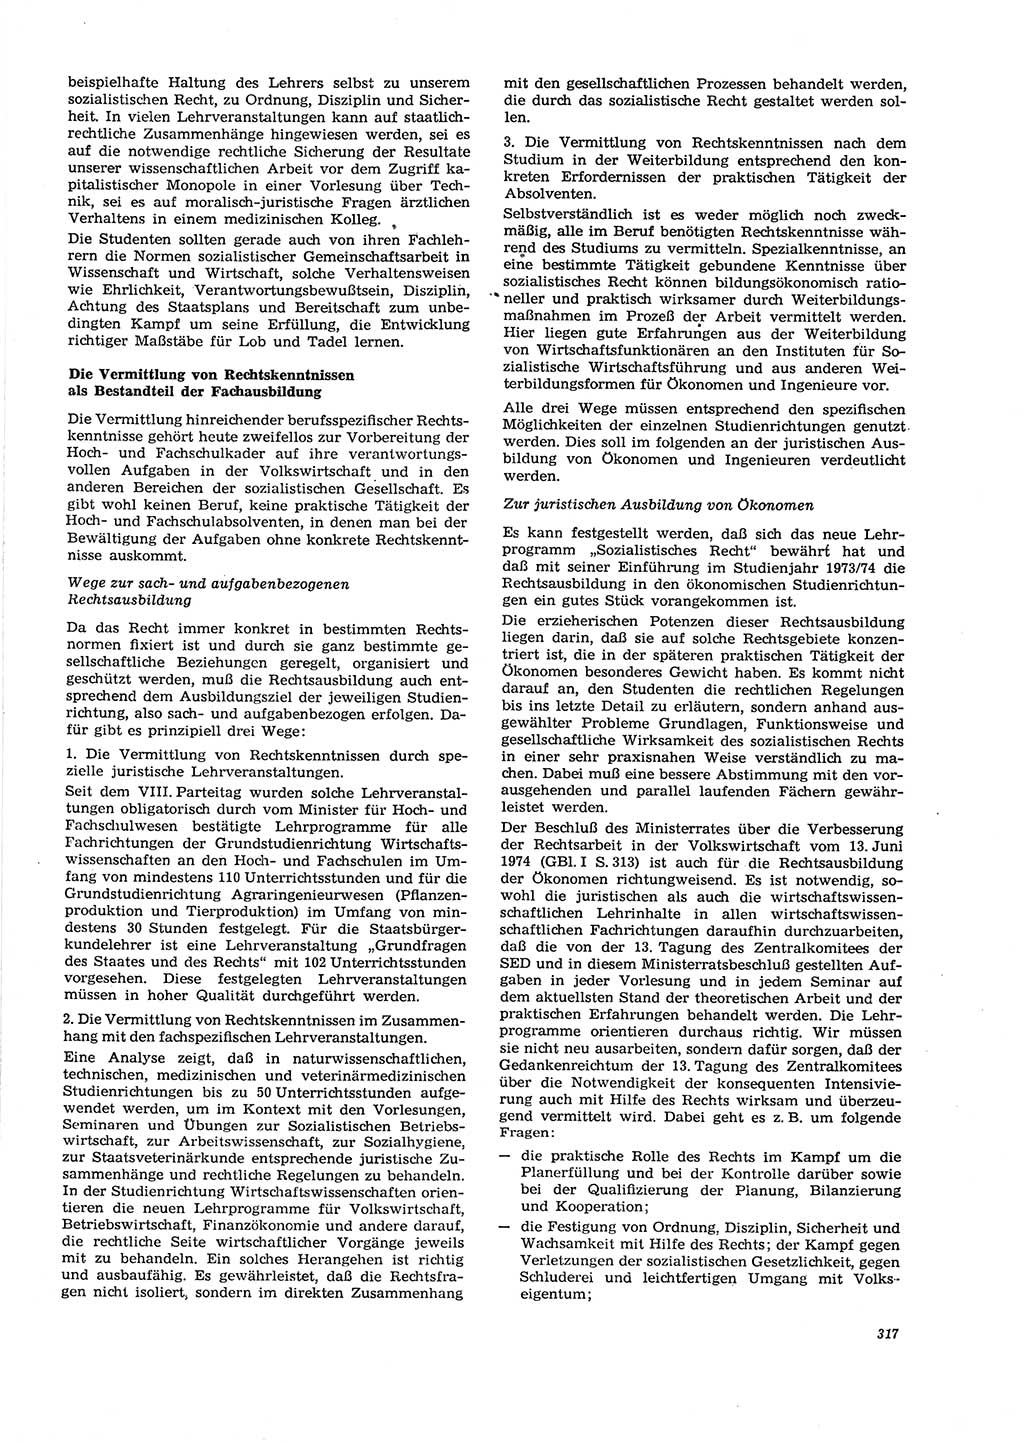 Neue Justiz (NJ), Zeitschrift für Recht und Rechtswissenschaft [Deutsche Demokratische Republik (DDR)], 29. Jahrgang 1975, Seite 317 (NJ DDR 1975, S. 317)